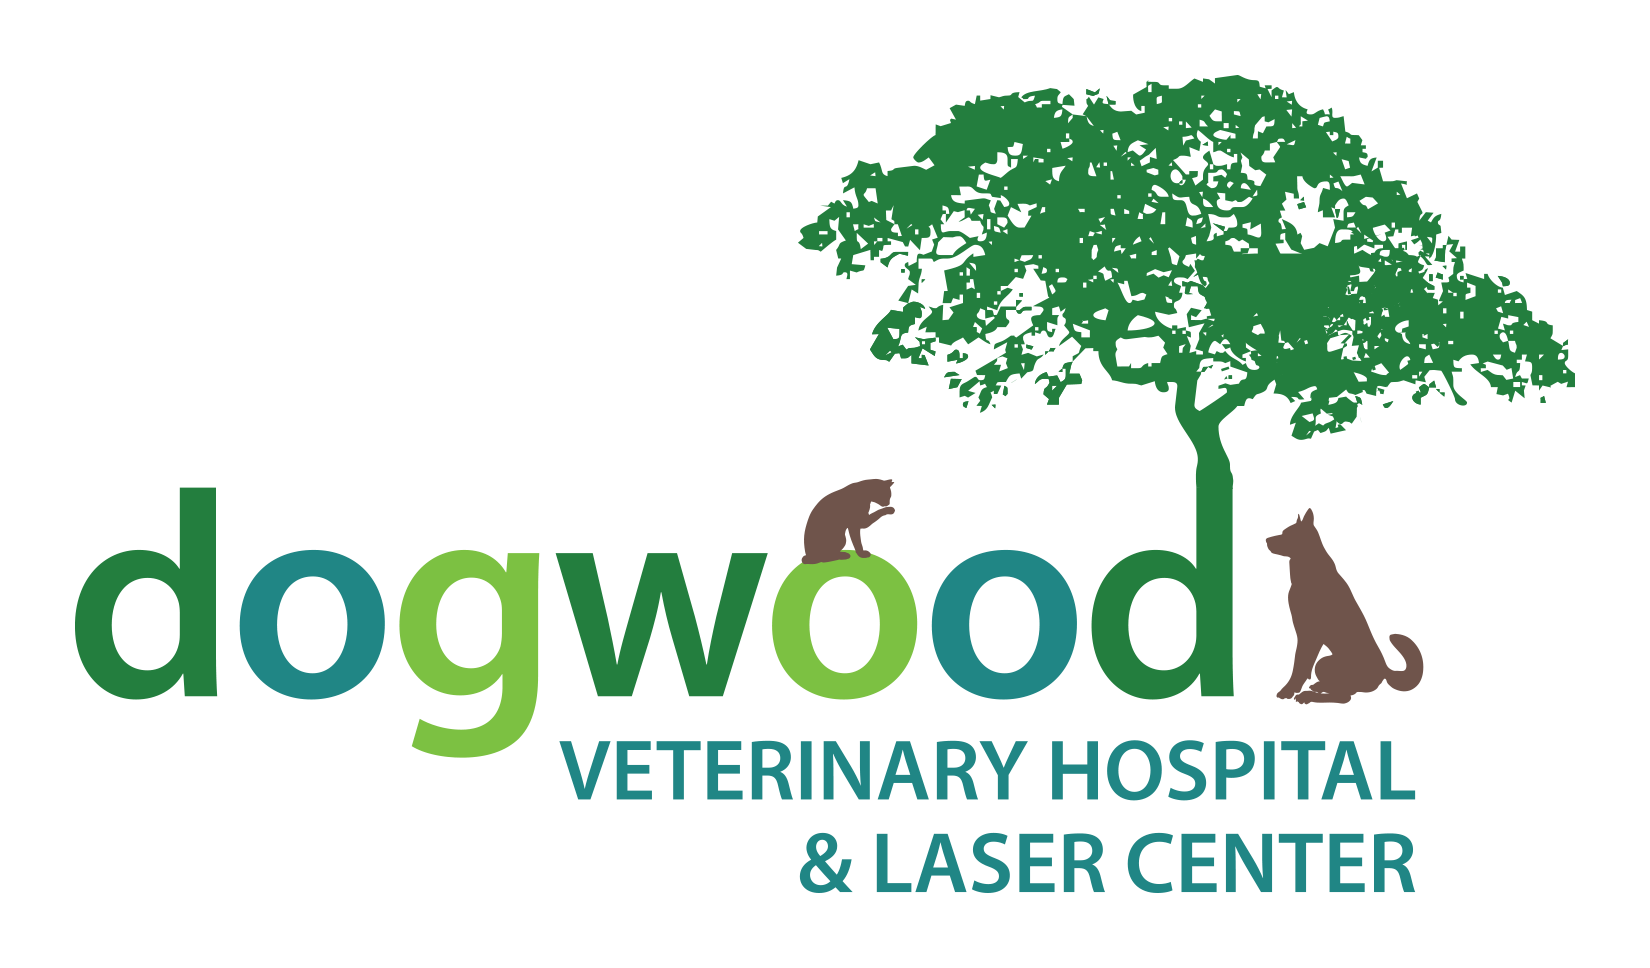 Dogwood Veterinary Hospital & Laser Center | Newnan, GA